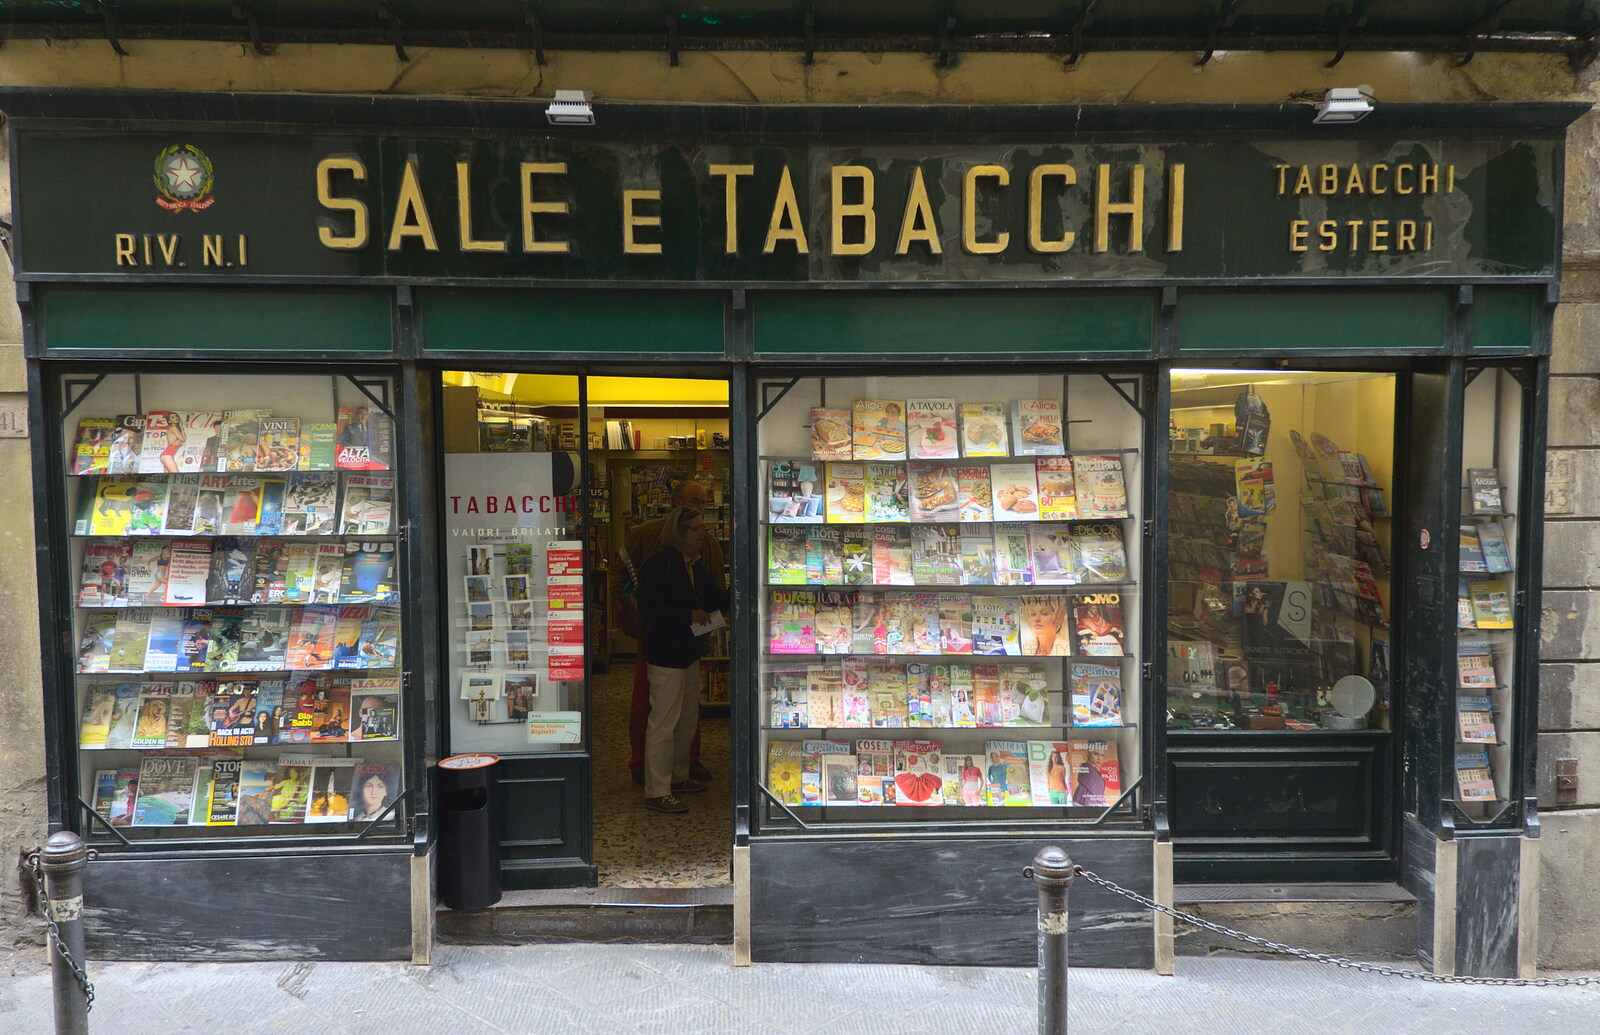 Marconi, Arezzo and the Sagra del Maccherone Festival, Battifolle, Tuscany - 9th June 2013: A nice old-fashioned tabacco shop